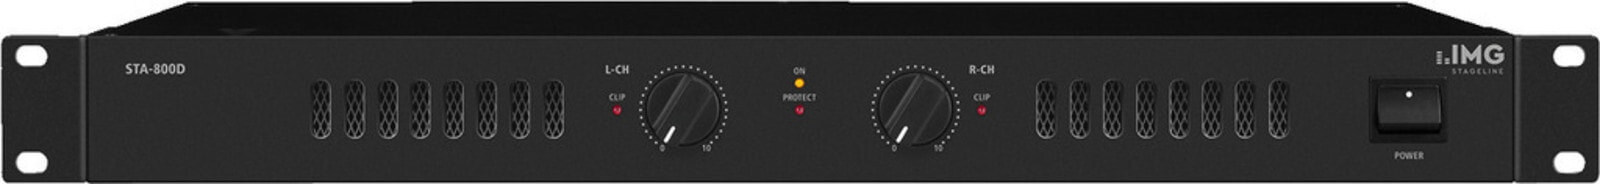 IMG Stage Line STA-800D усилитель звуковой частоты 2.0 канала Представление / сцена Черный 25.5200